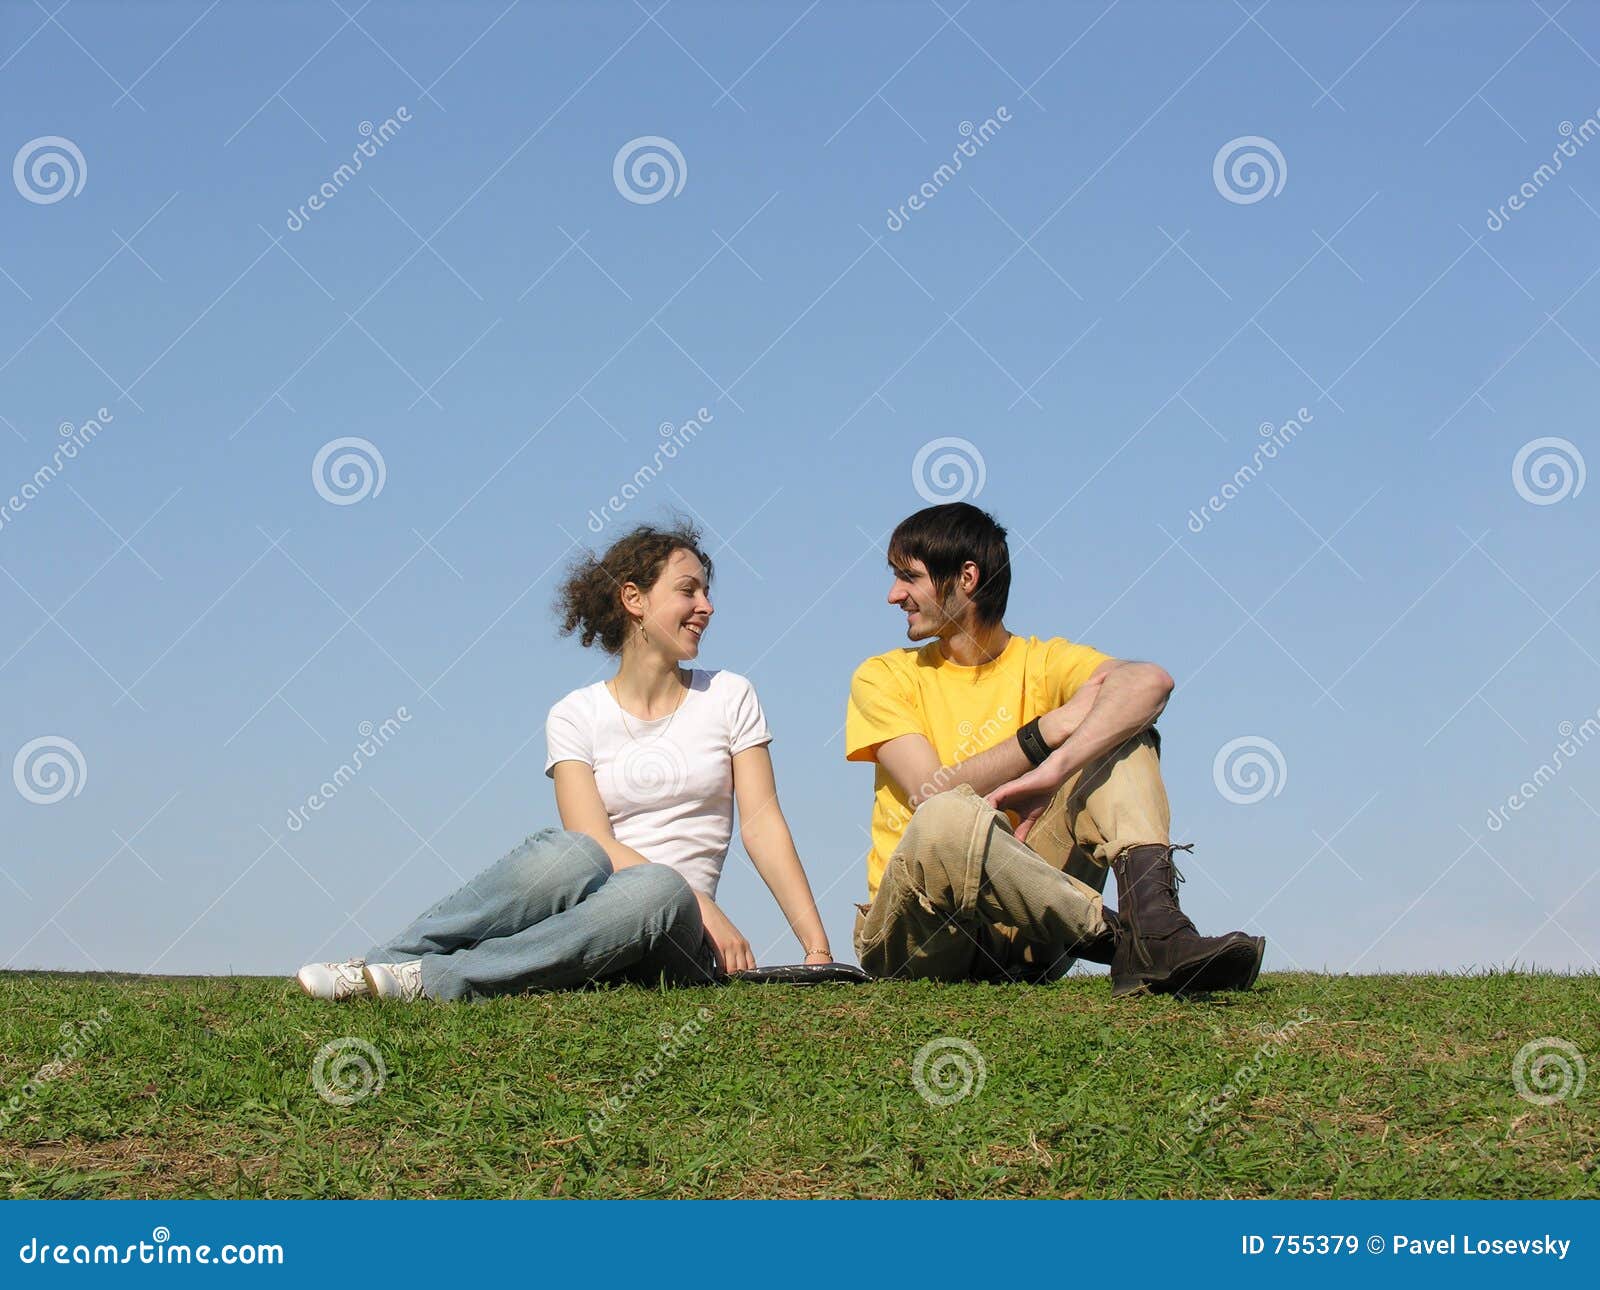 Идти друг напротив друга. Два человека сидят на траве. Пара сидит на траве. Человек сидит на траве. 2 Человека сидят на траве.